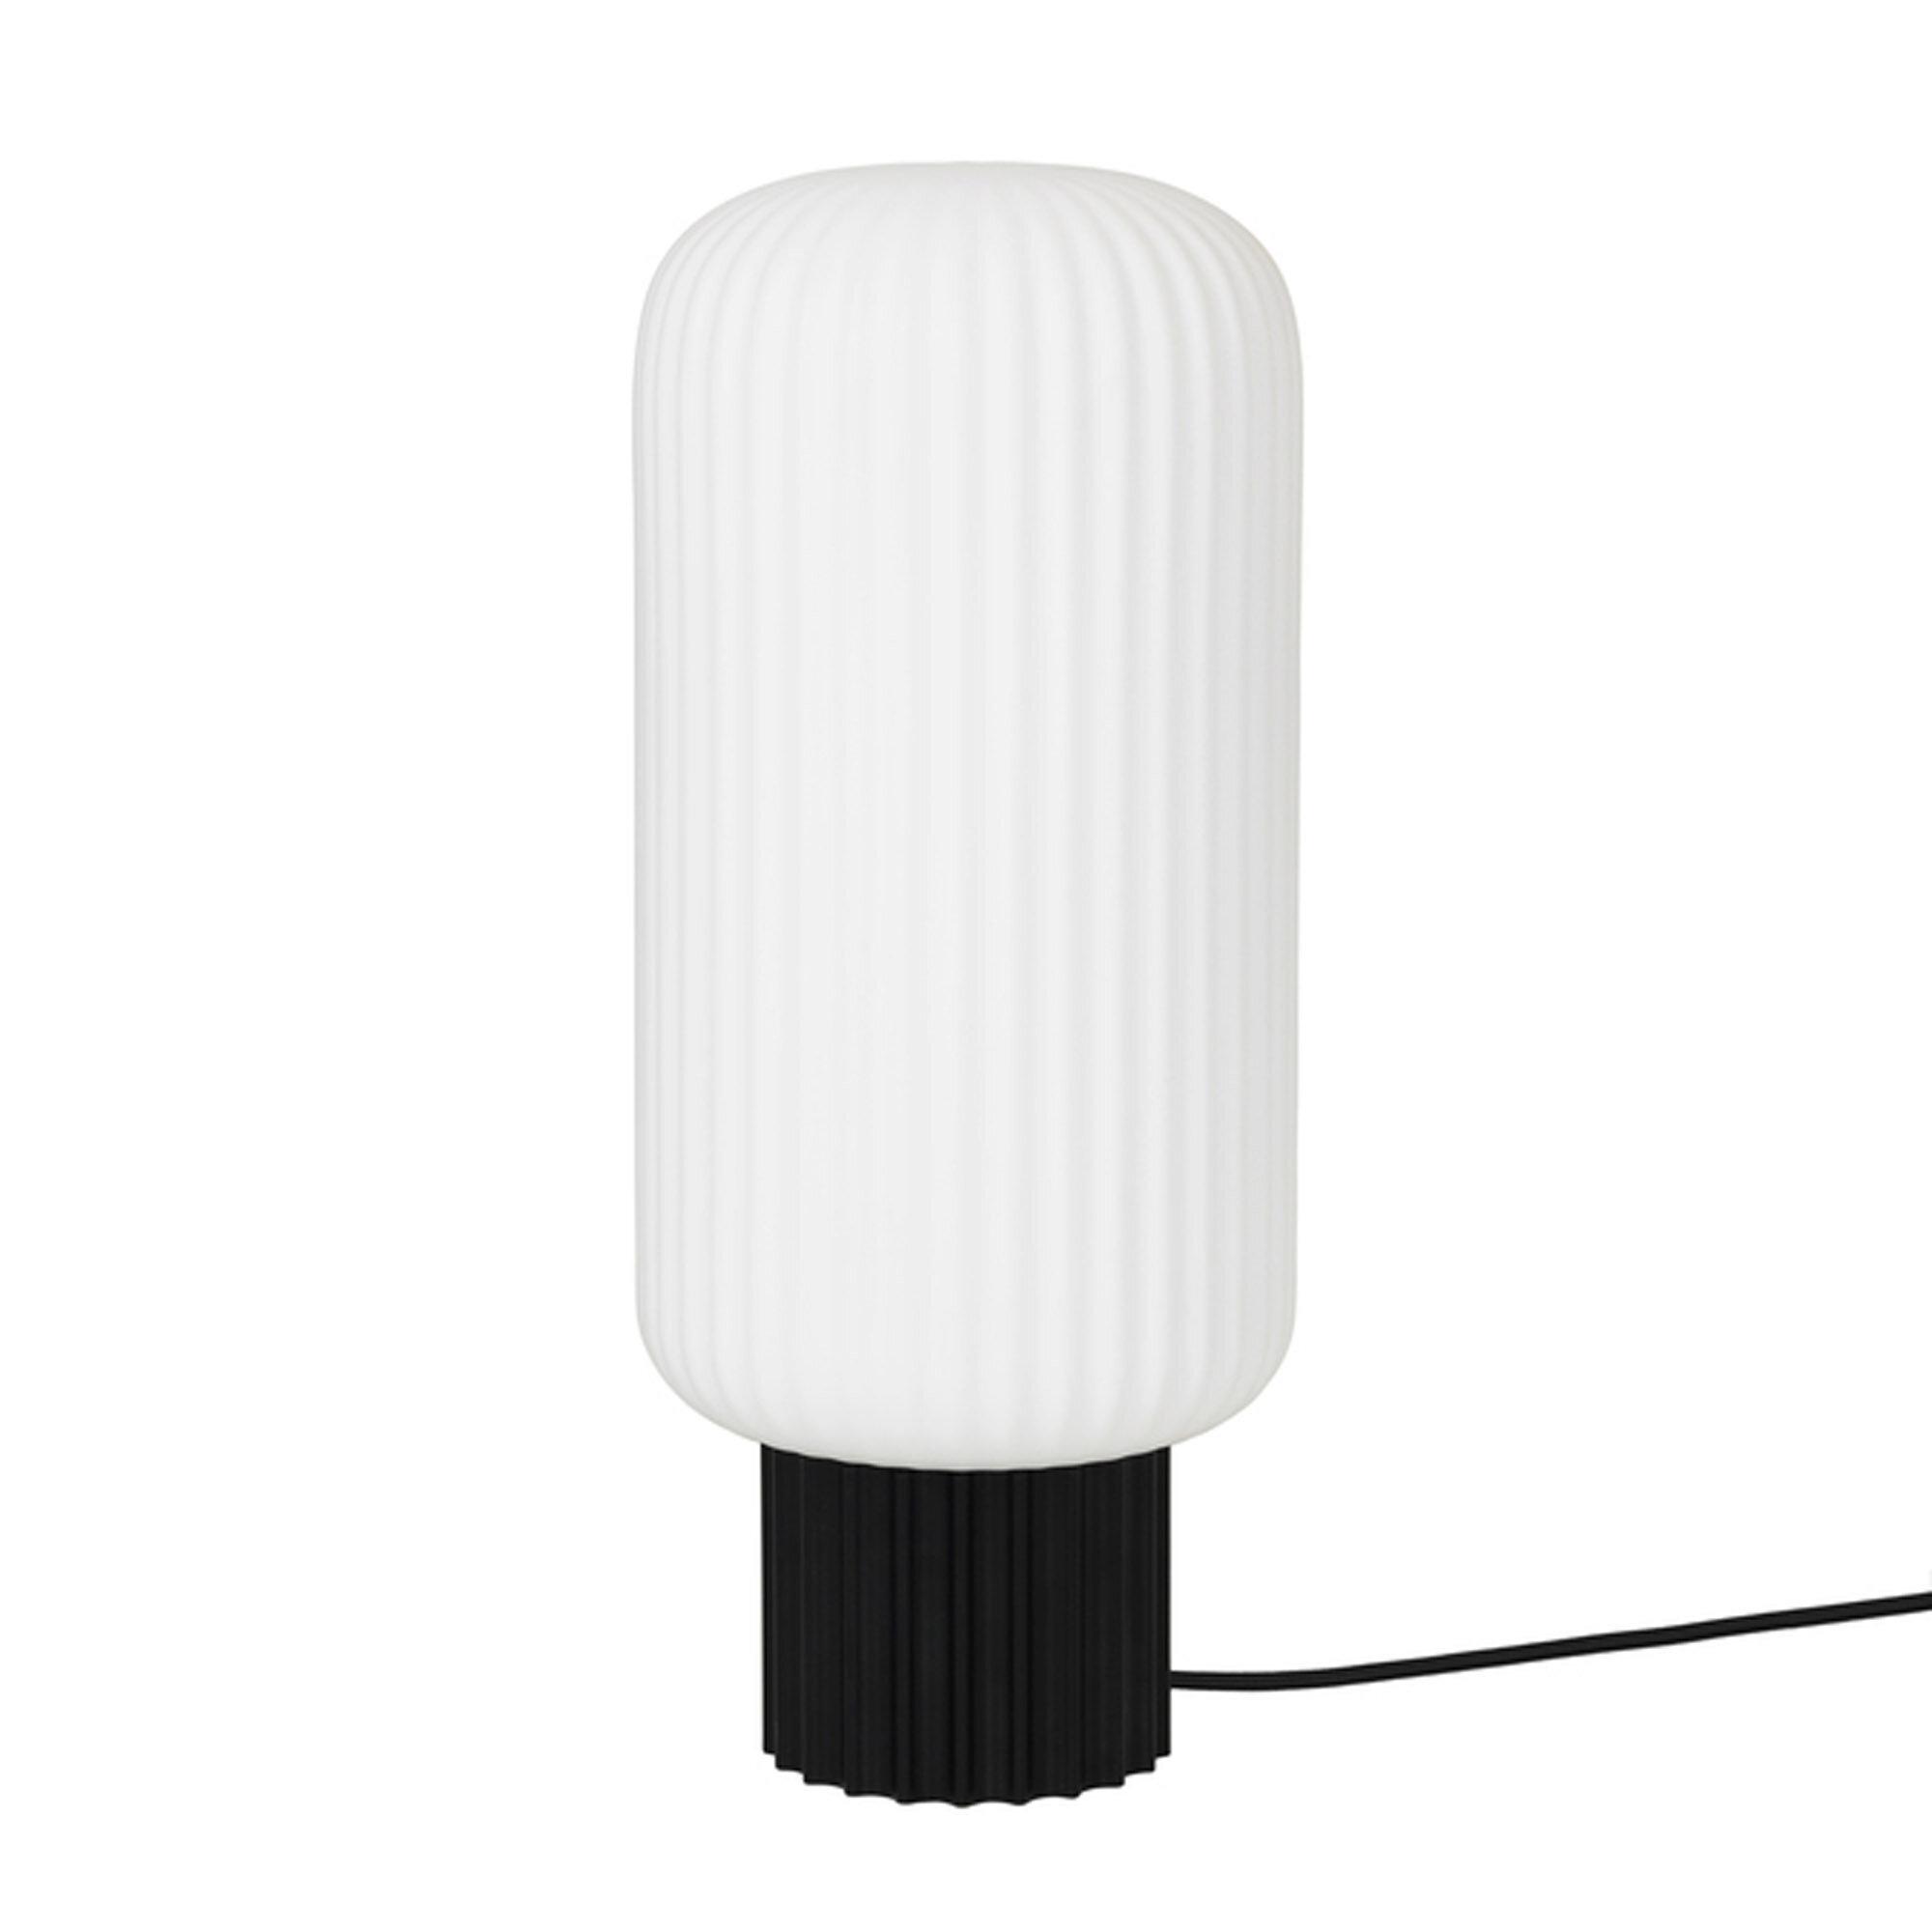  Bord Lampe 'Lolly' fra Broste Copenhagen (Varenr: 60060004)